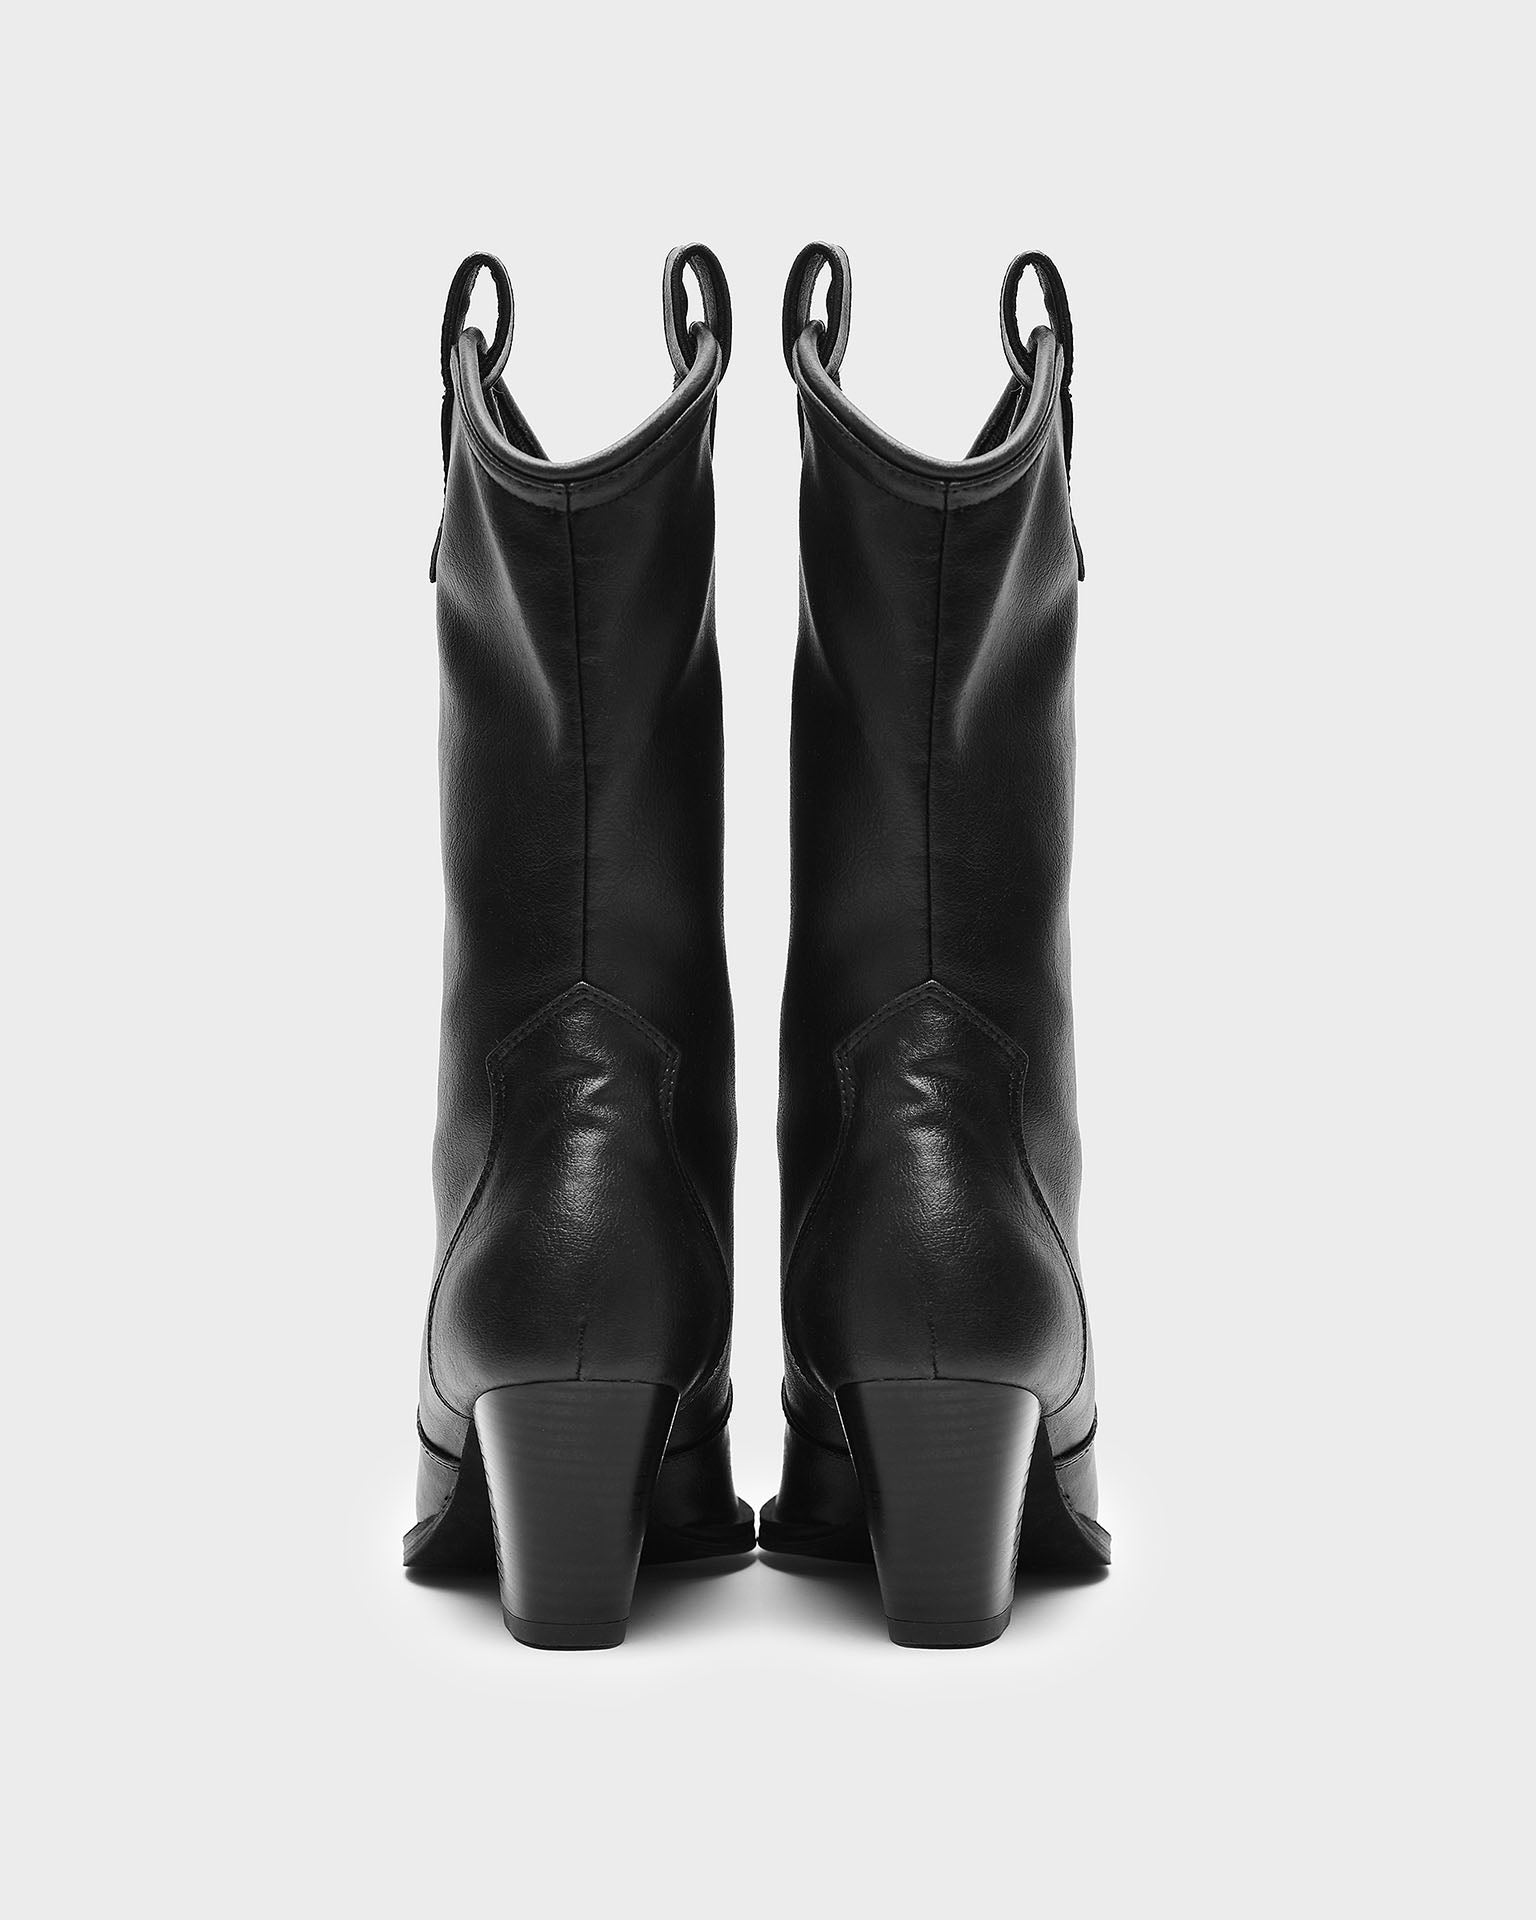 Wegańskie czarne kowbojki Sleeky Cowboy Boots